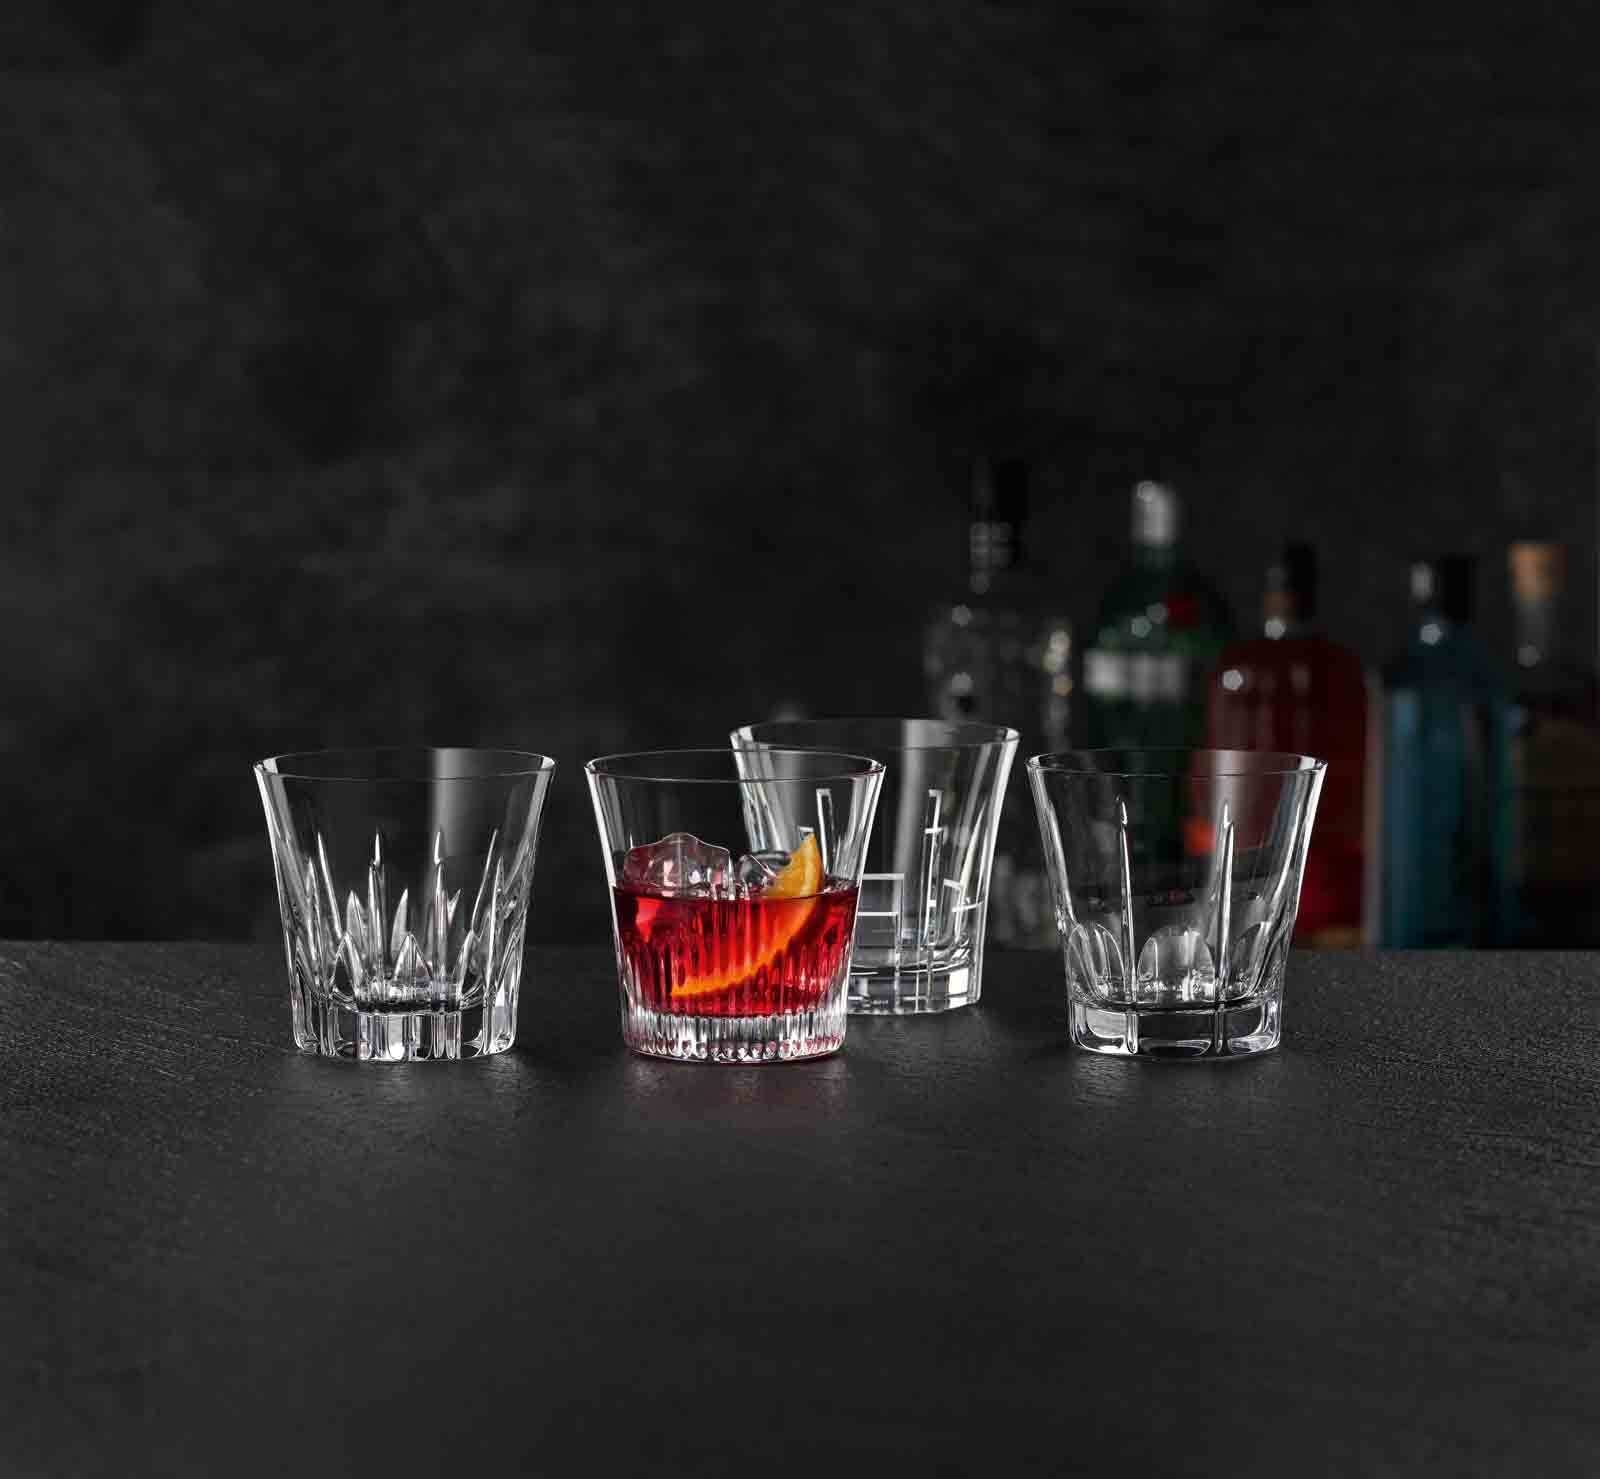 Nachtmann 314 Glas Set, Whiskyglas Classix Whiskygläser ml 4er